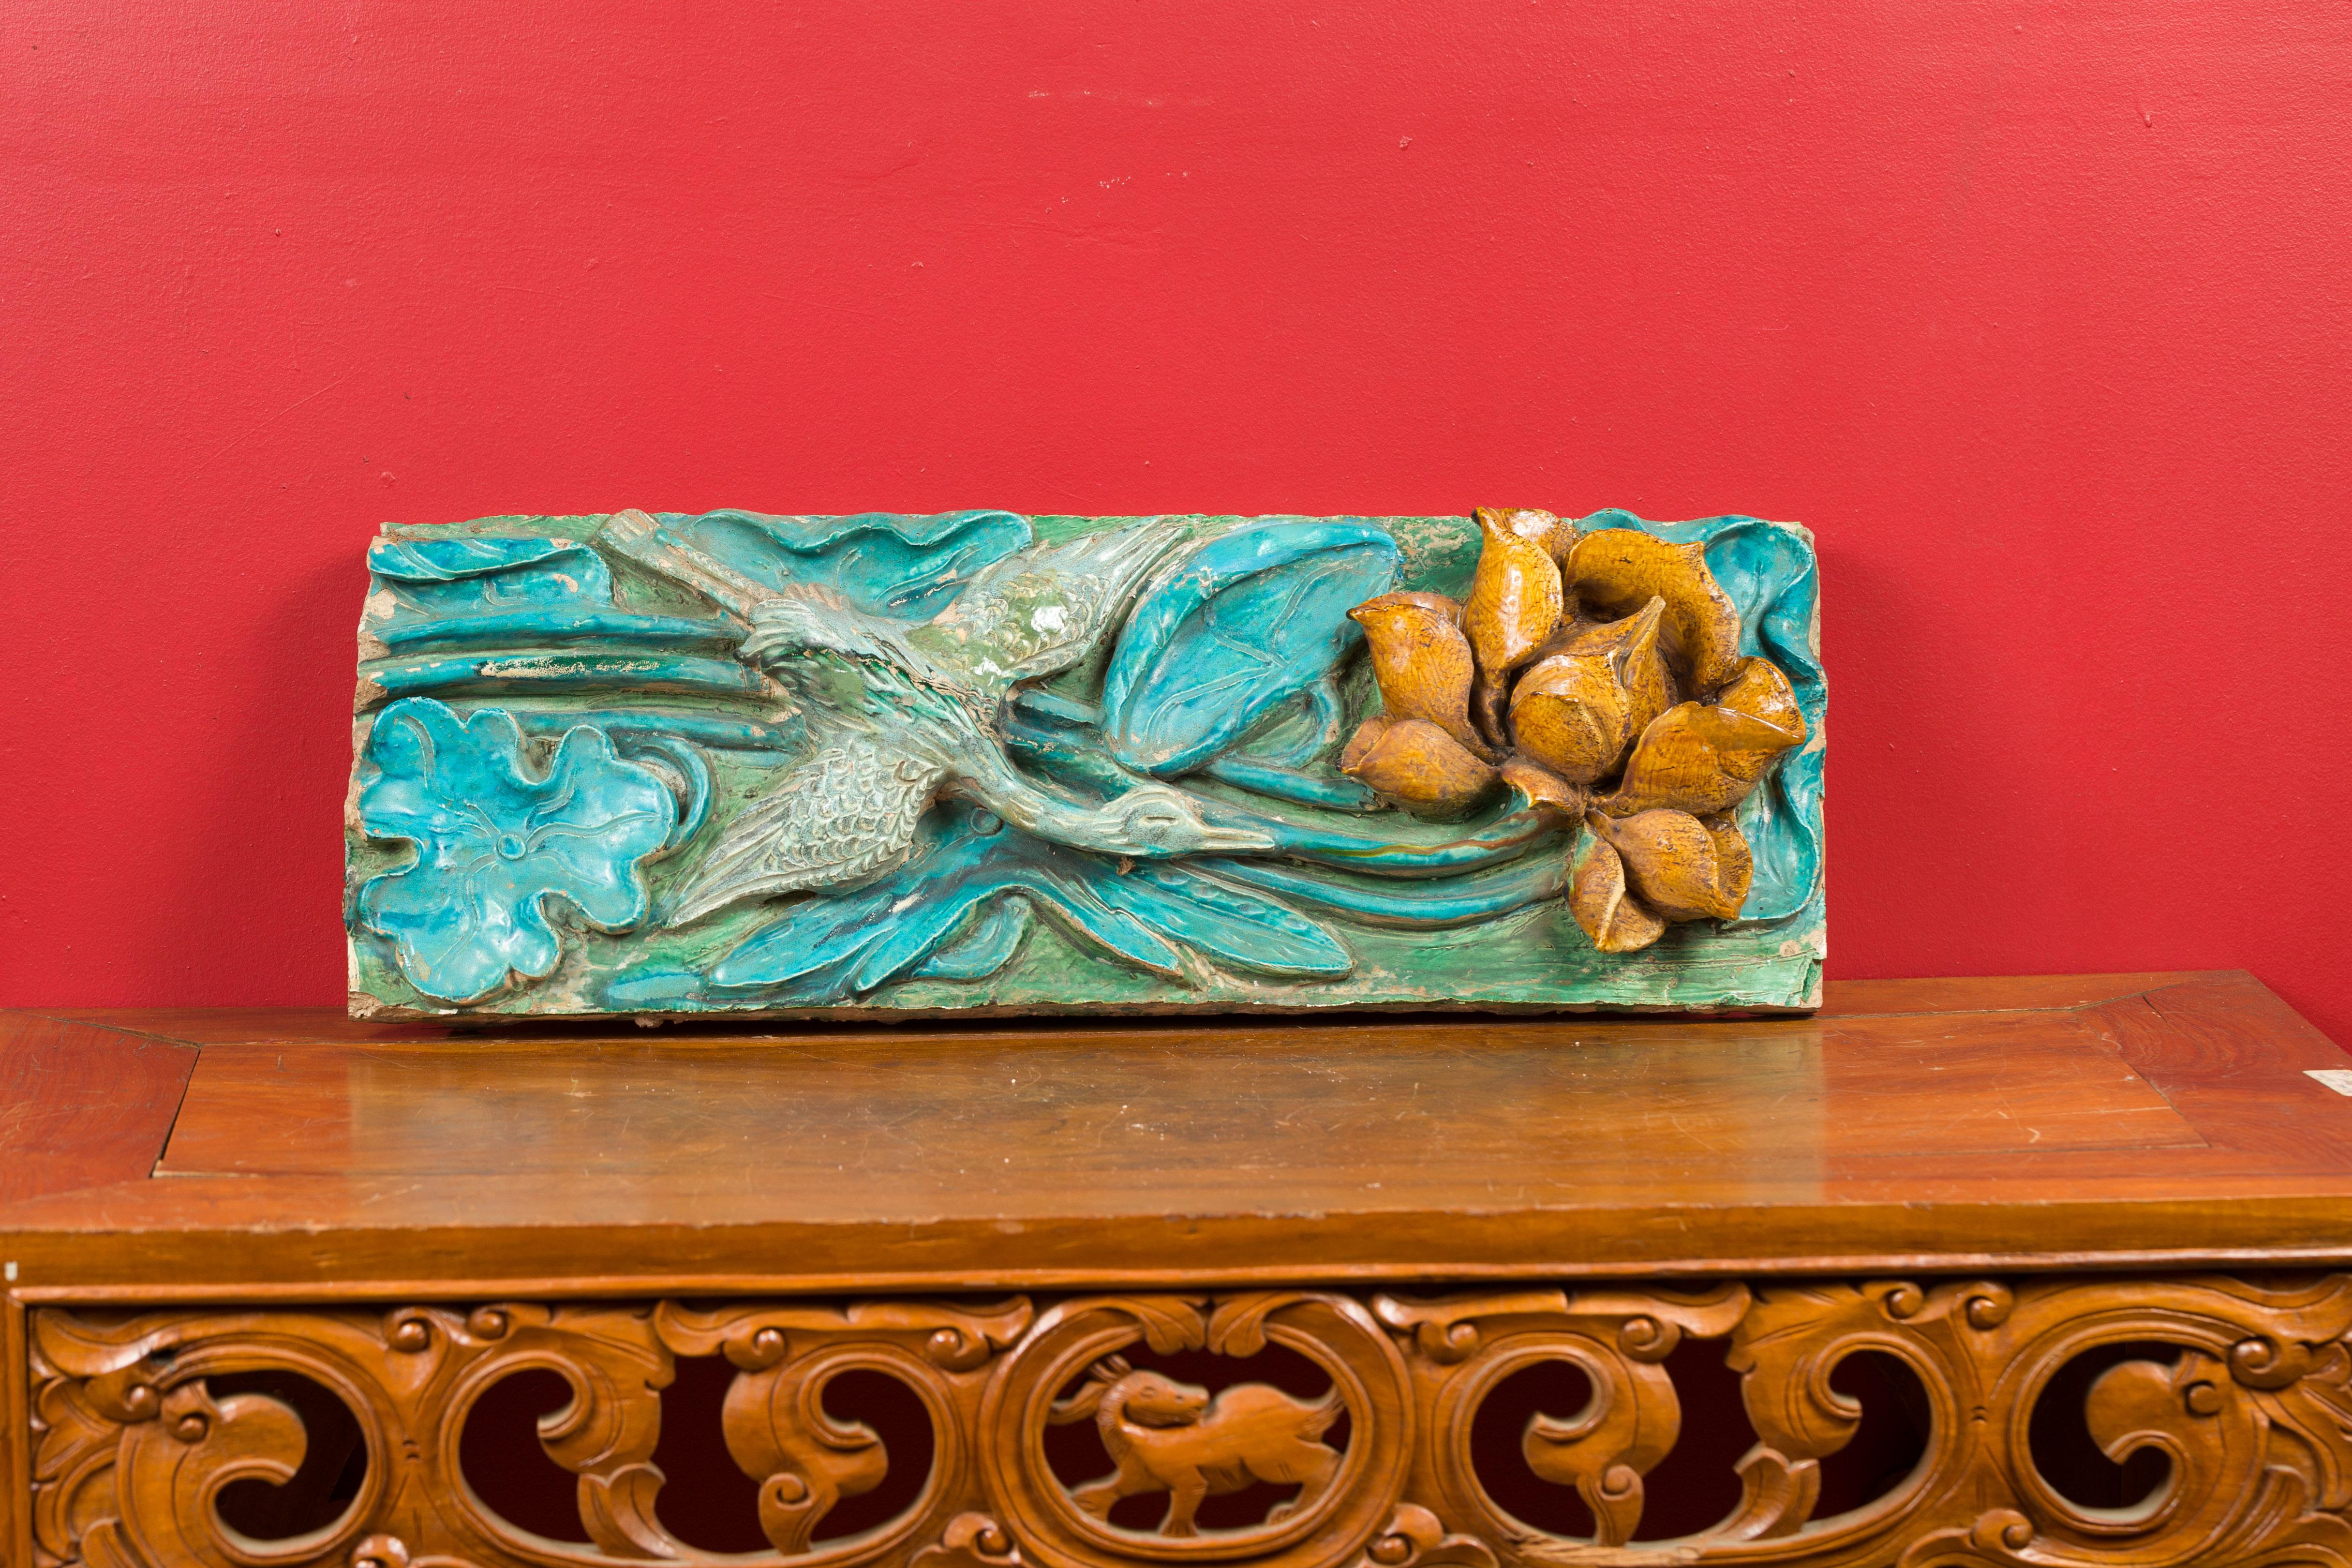 Tuile ancienne chinoise de la période de la dynastie Ming, avec finition turquoise, grue et fleur. Créée en Chine sous la dynastie Ming (1368-1644), cette tuile ancienne présente un fond turquoise et vert orné de feuillages. Une grue s'envole pour